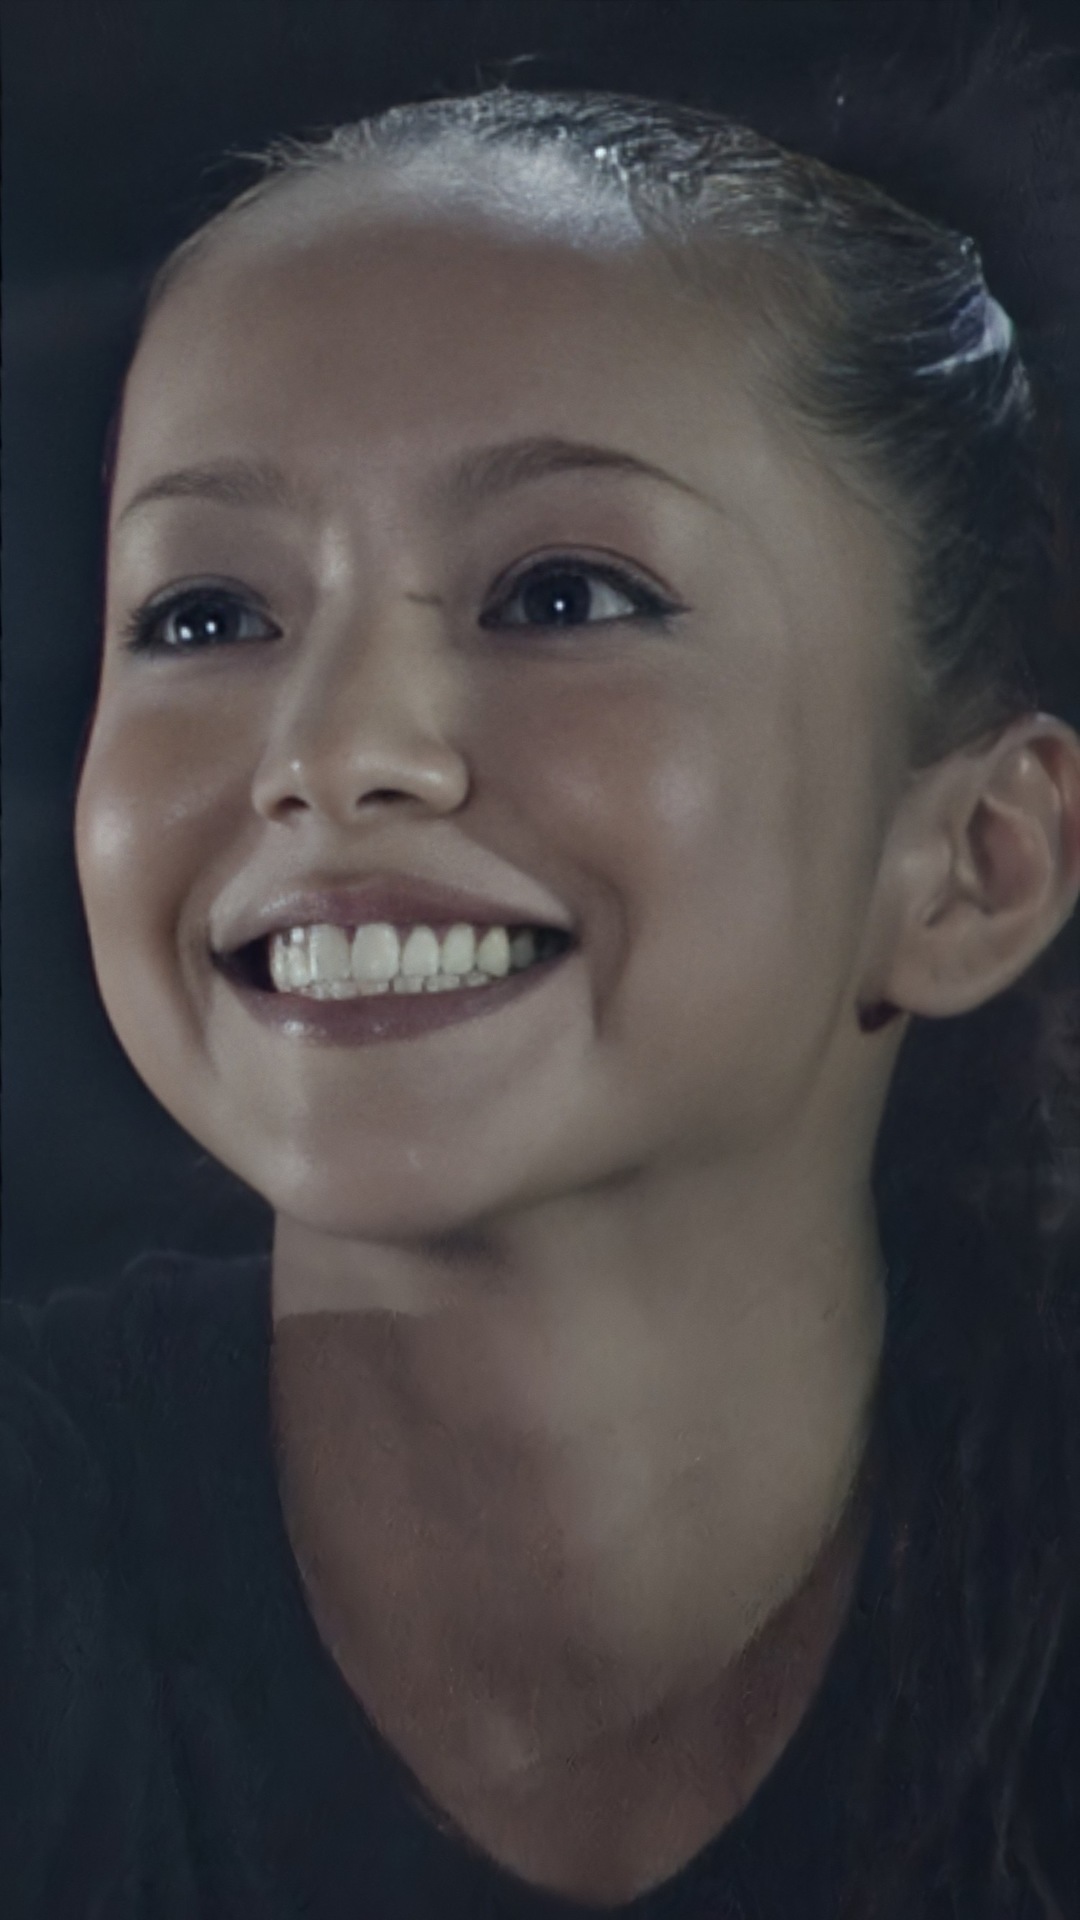 動画 画像 安室奈美恵 笑顔が可愛い特集 Amuamuchannel アムアムチャンネル コンテンツ